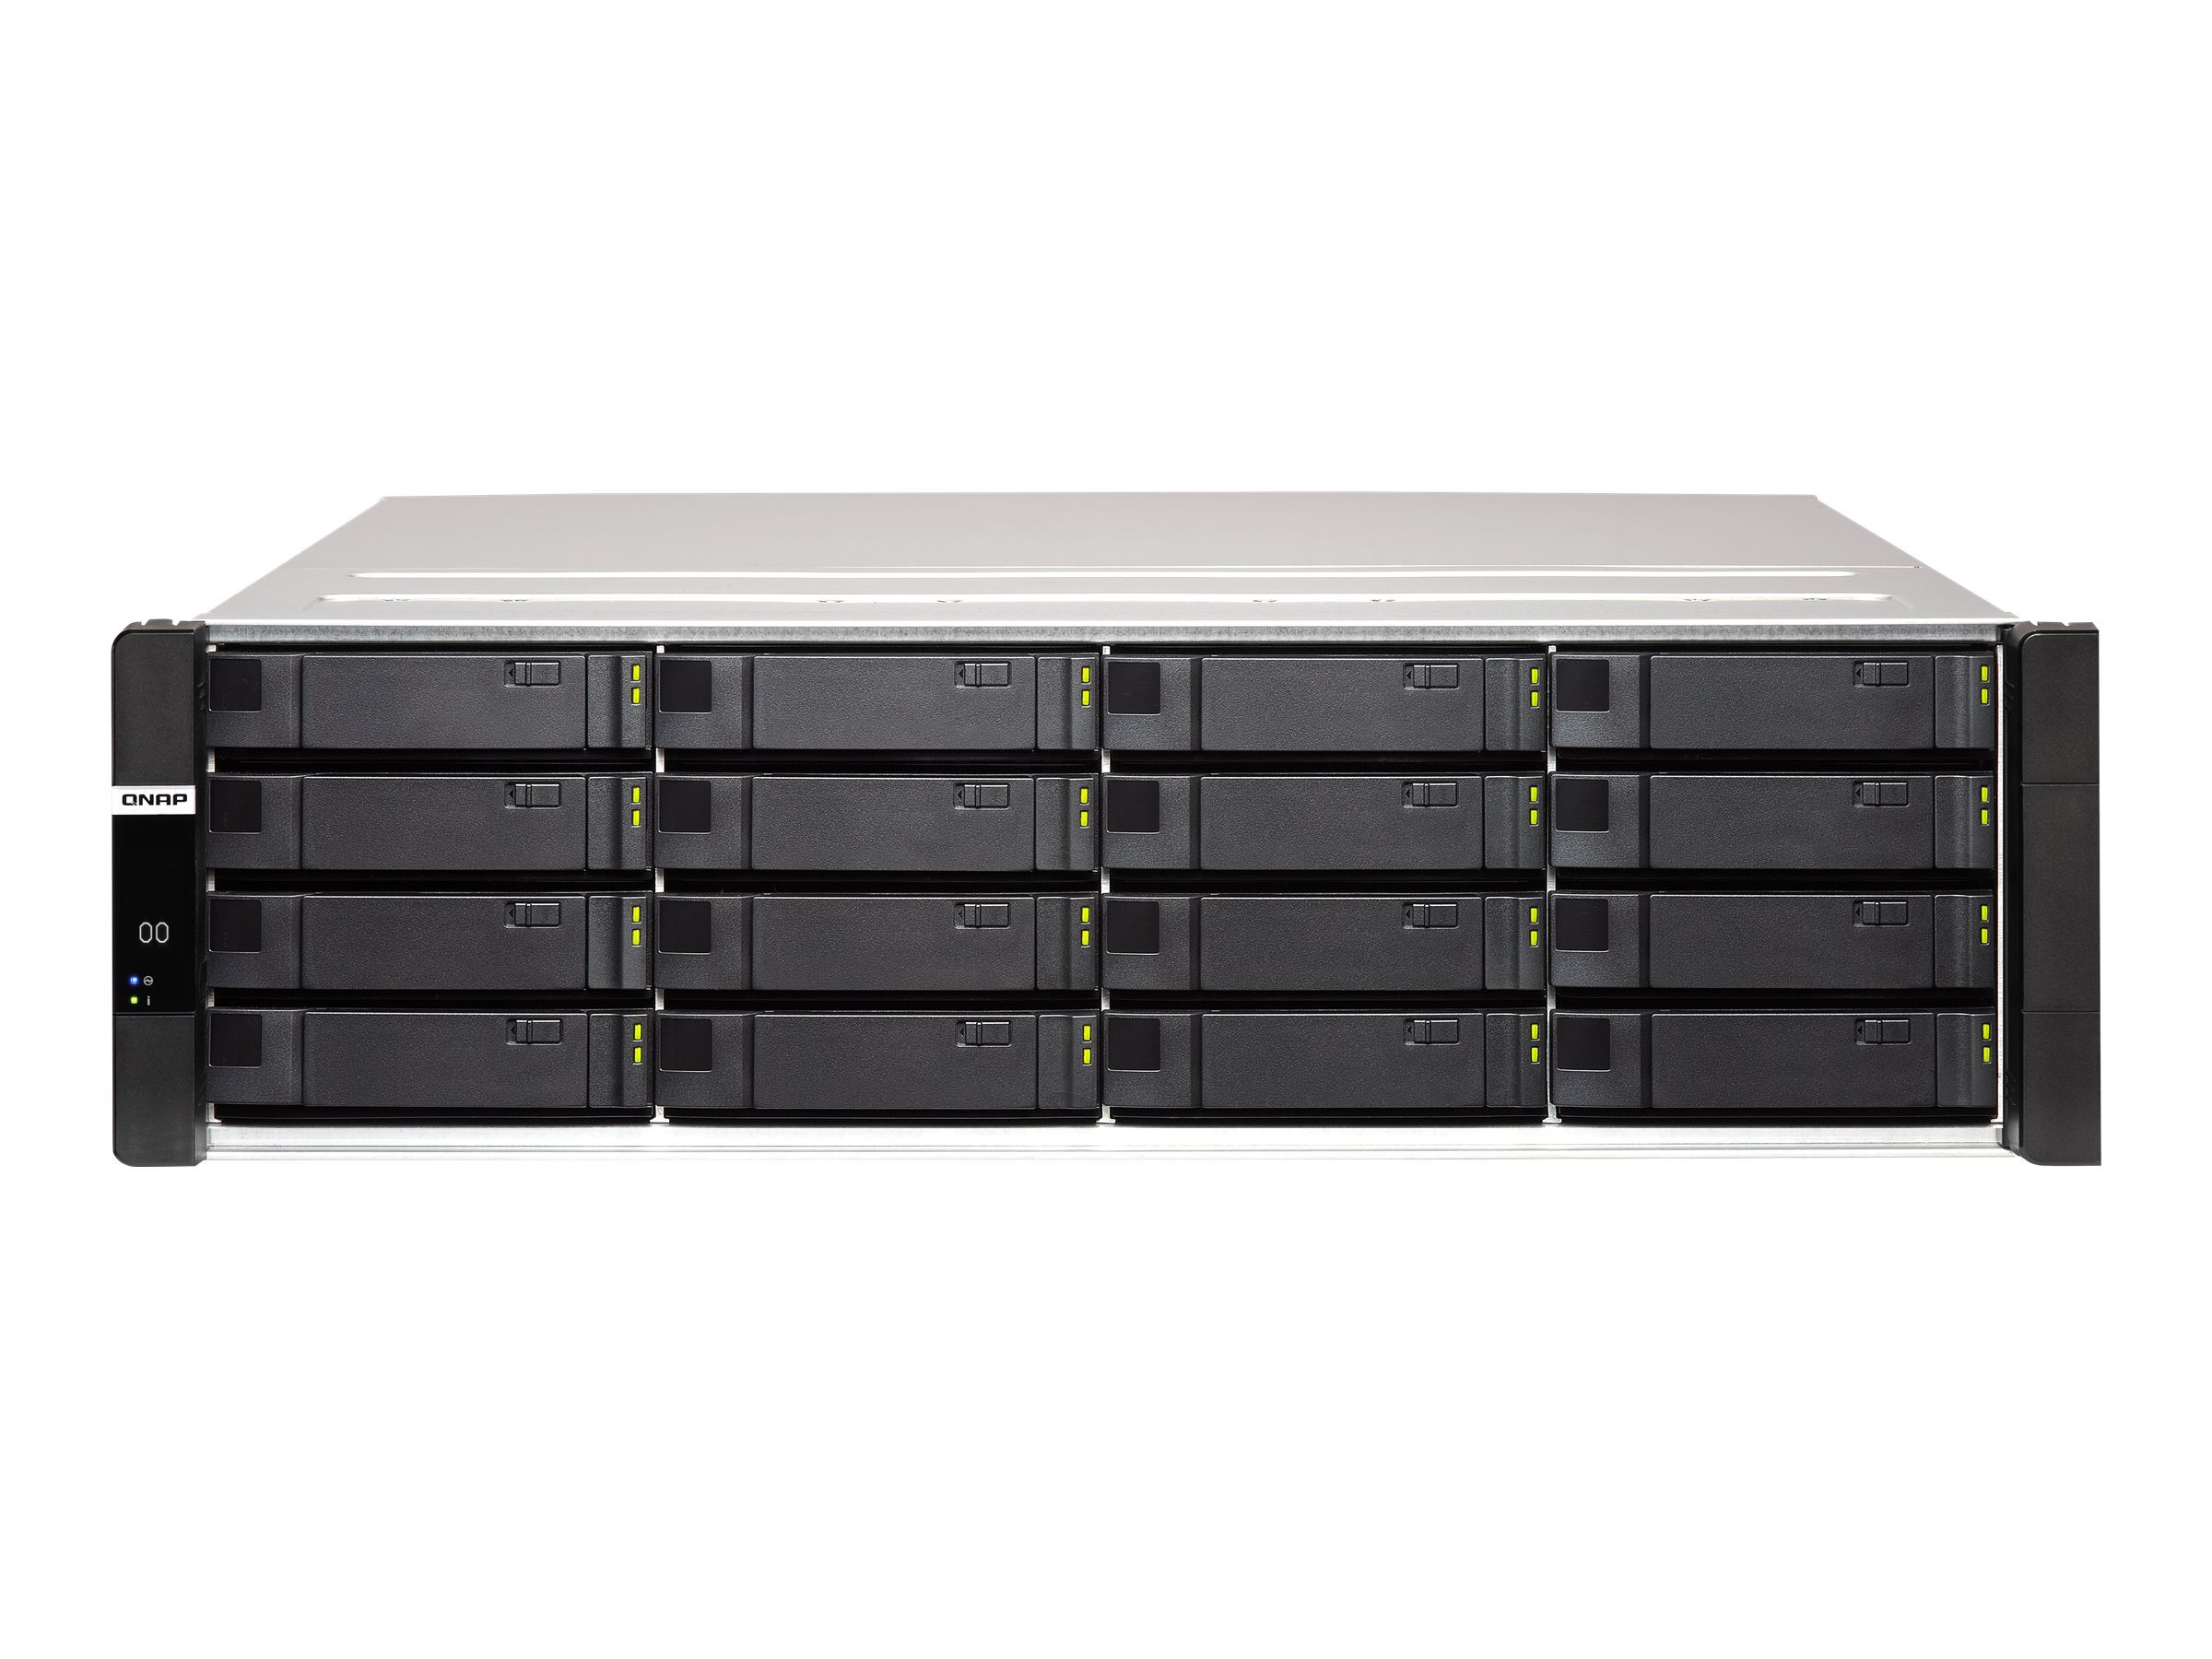 QNAP ES1686DC - Serveur NAS - 16 Baies - rack-montable - SAS 12Gb/s - RAID RAID 0, 1, 5, 6, 10, JBOD, disque de réserve 5, 6 disques de secours, disque de réserve 10, disque de réserve 1 - RAM 64 Go - Gigabit Ethernet / 10 Gigabit Ethernet - iSCSI support - 3U - ES1686DC-2123IT-64G - NAS